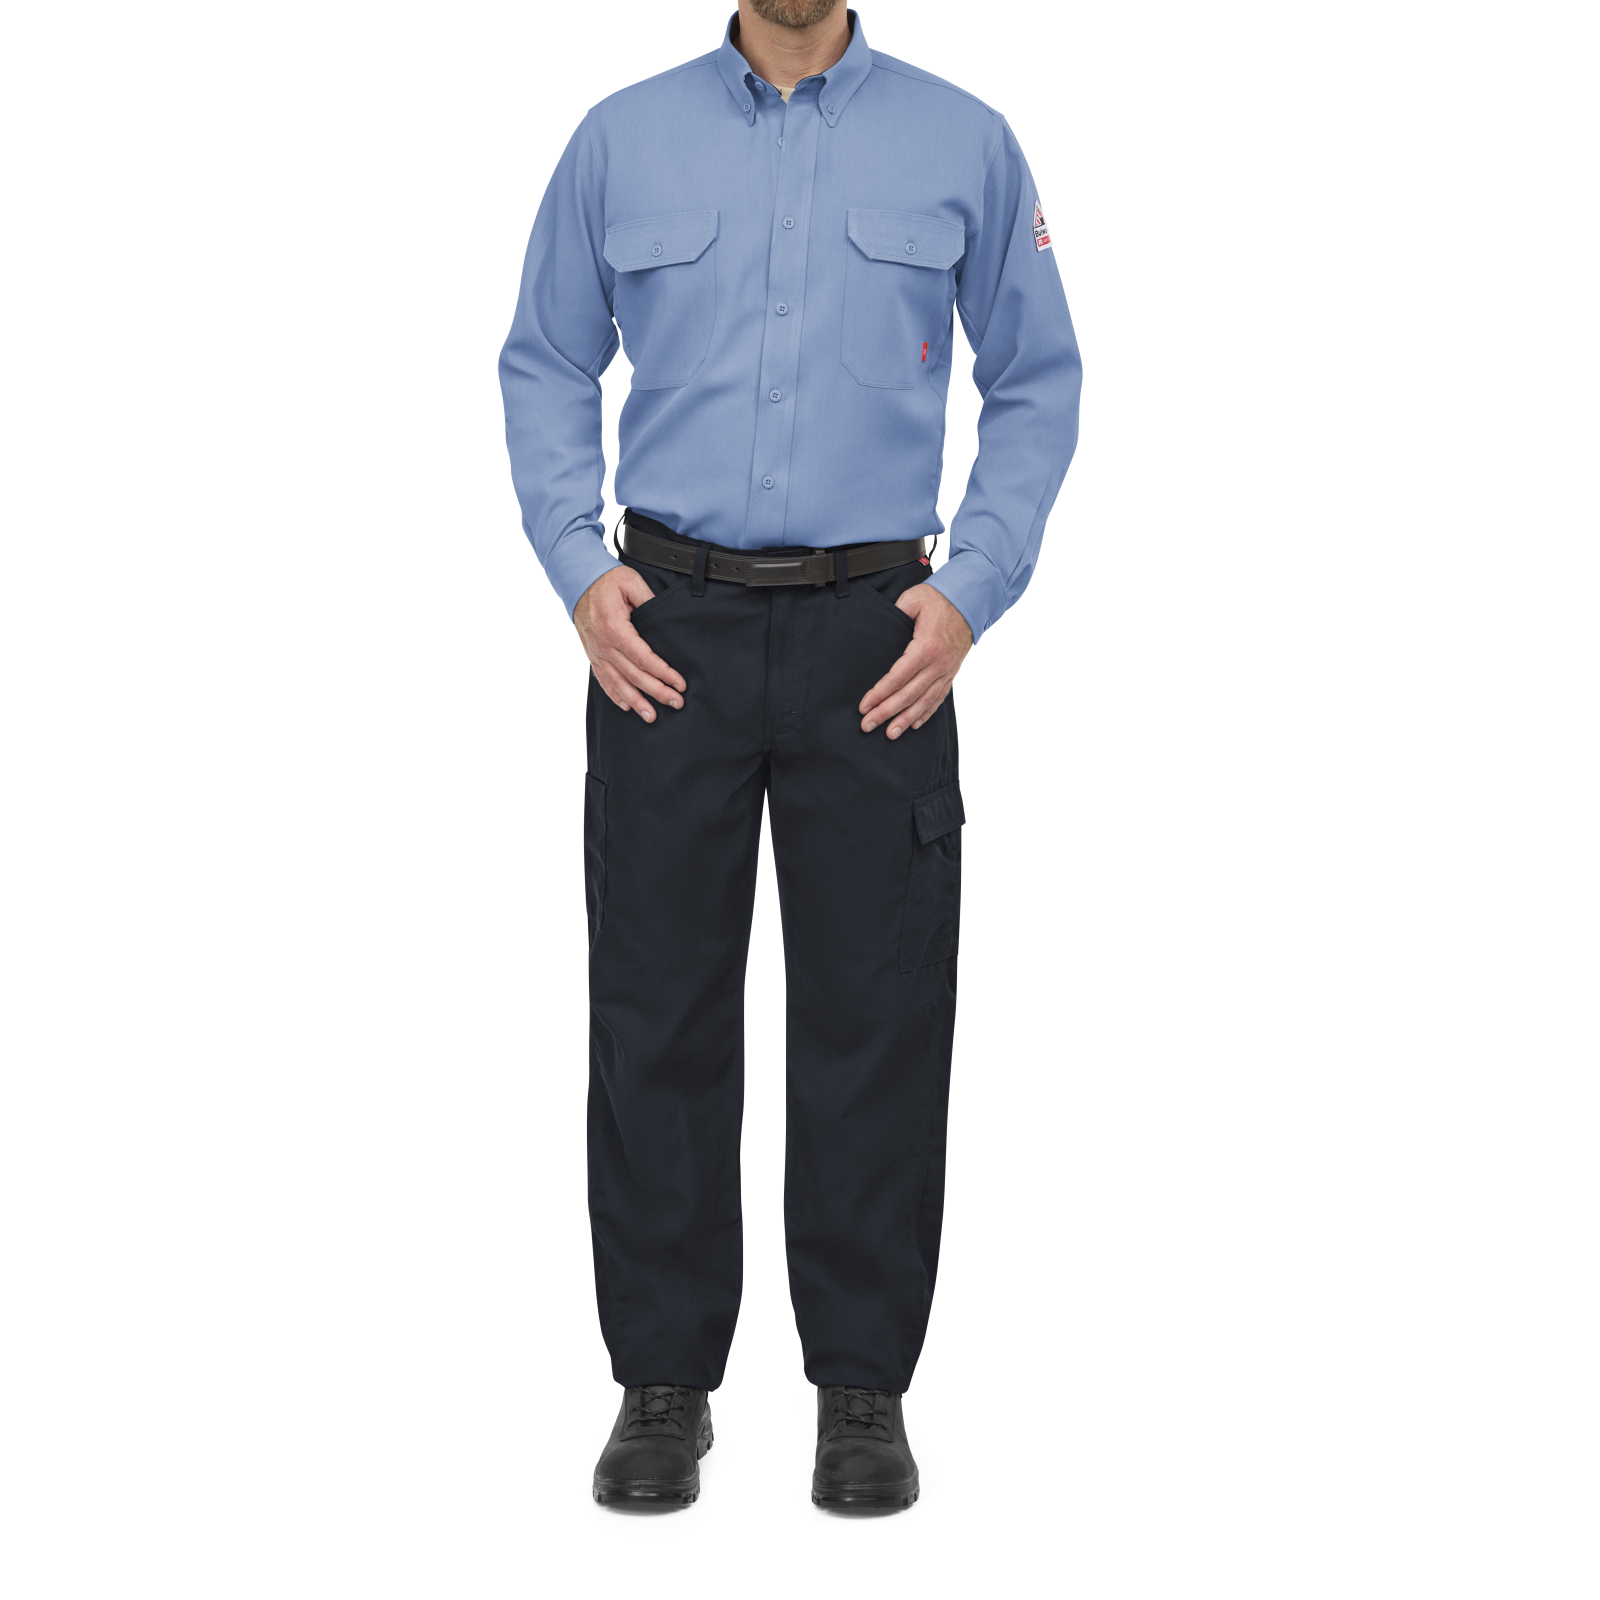 Extreme Stretch Zip Leg Pants - Sound Uniform Solutions